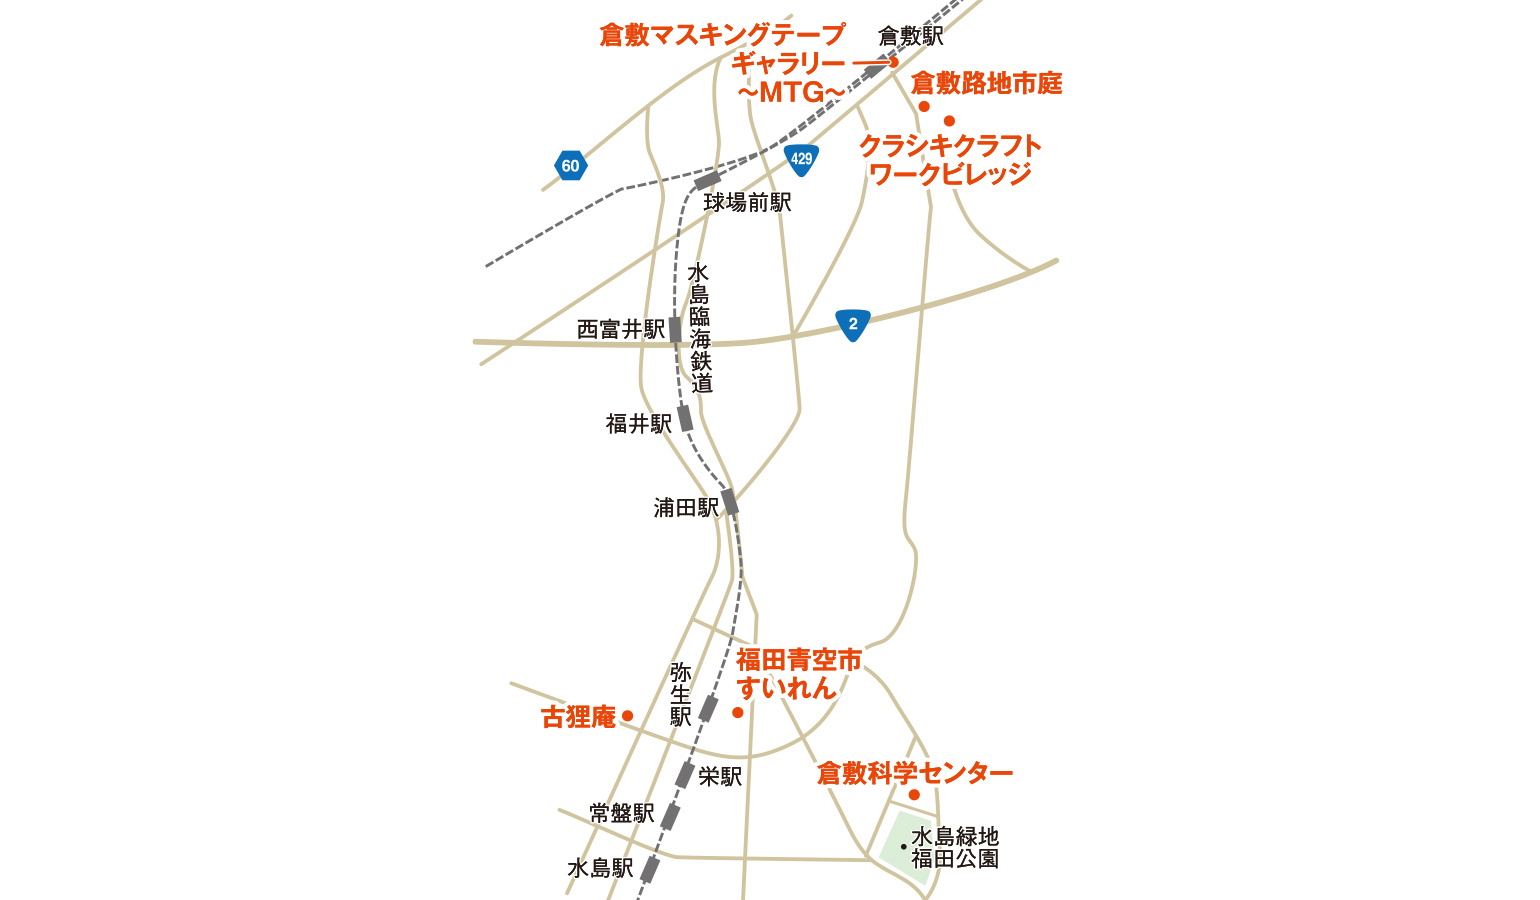 福田青空市すいれんと周辺の見所の地図